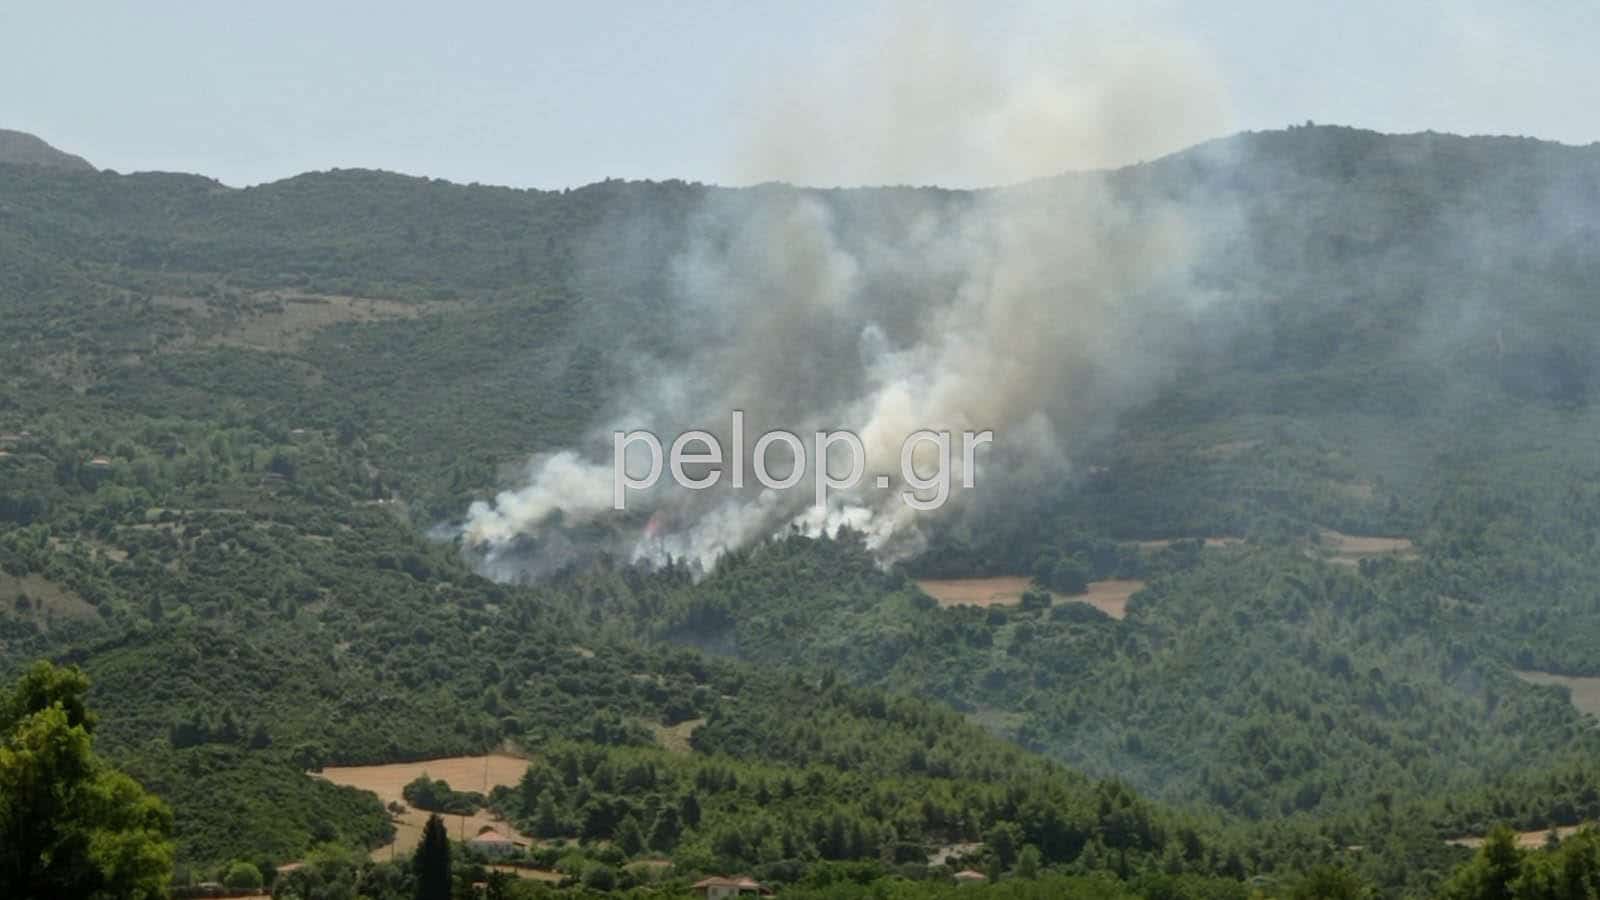 Πυρκαγιά στην Αχαϊα - Εκκενώνεται ο οικισμός Δροσιά (Φώτο)